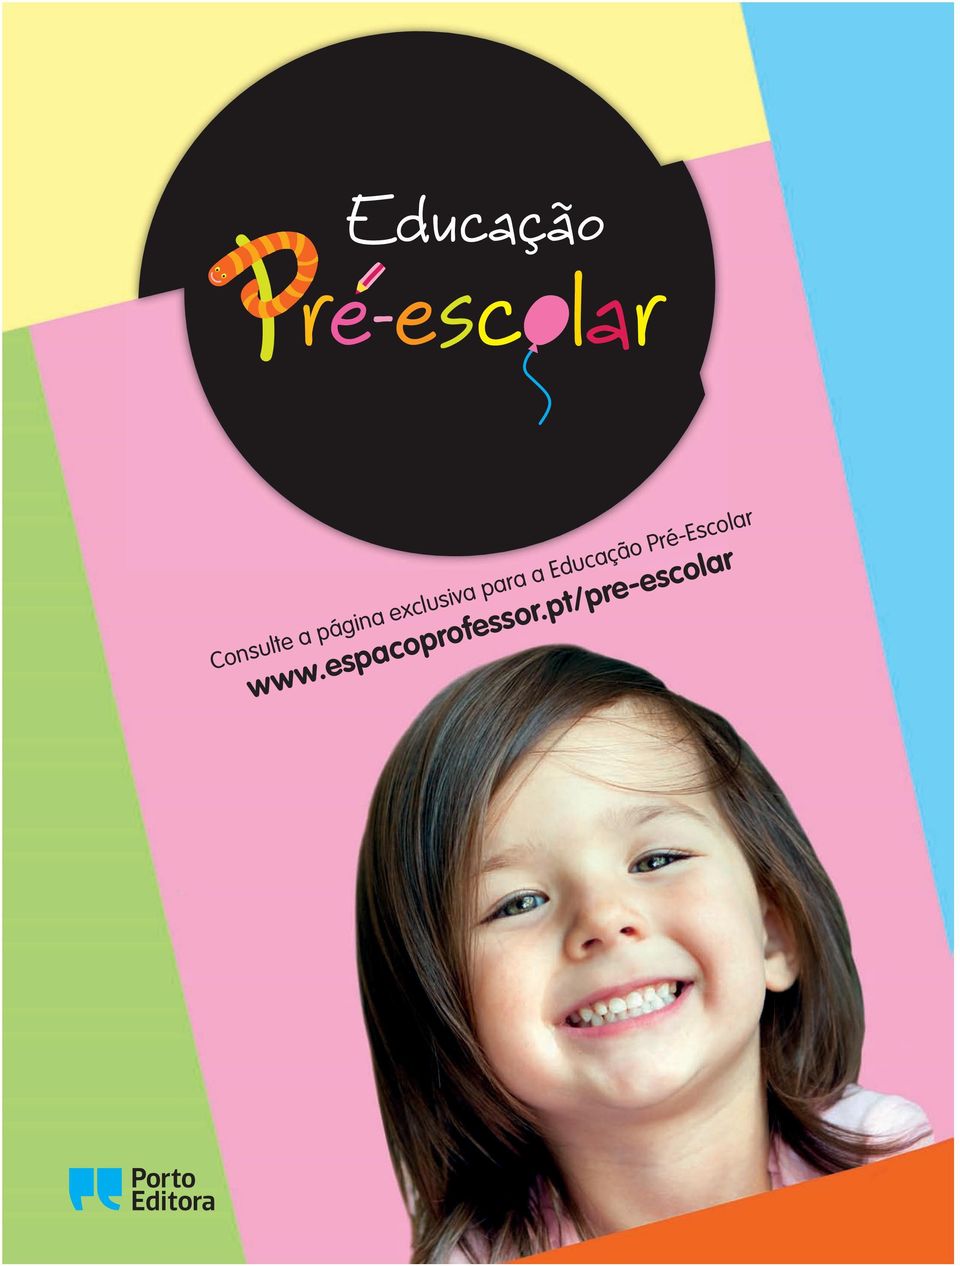 Educação Pré-Escolar www.